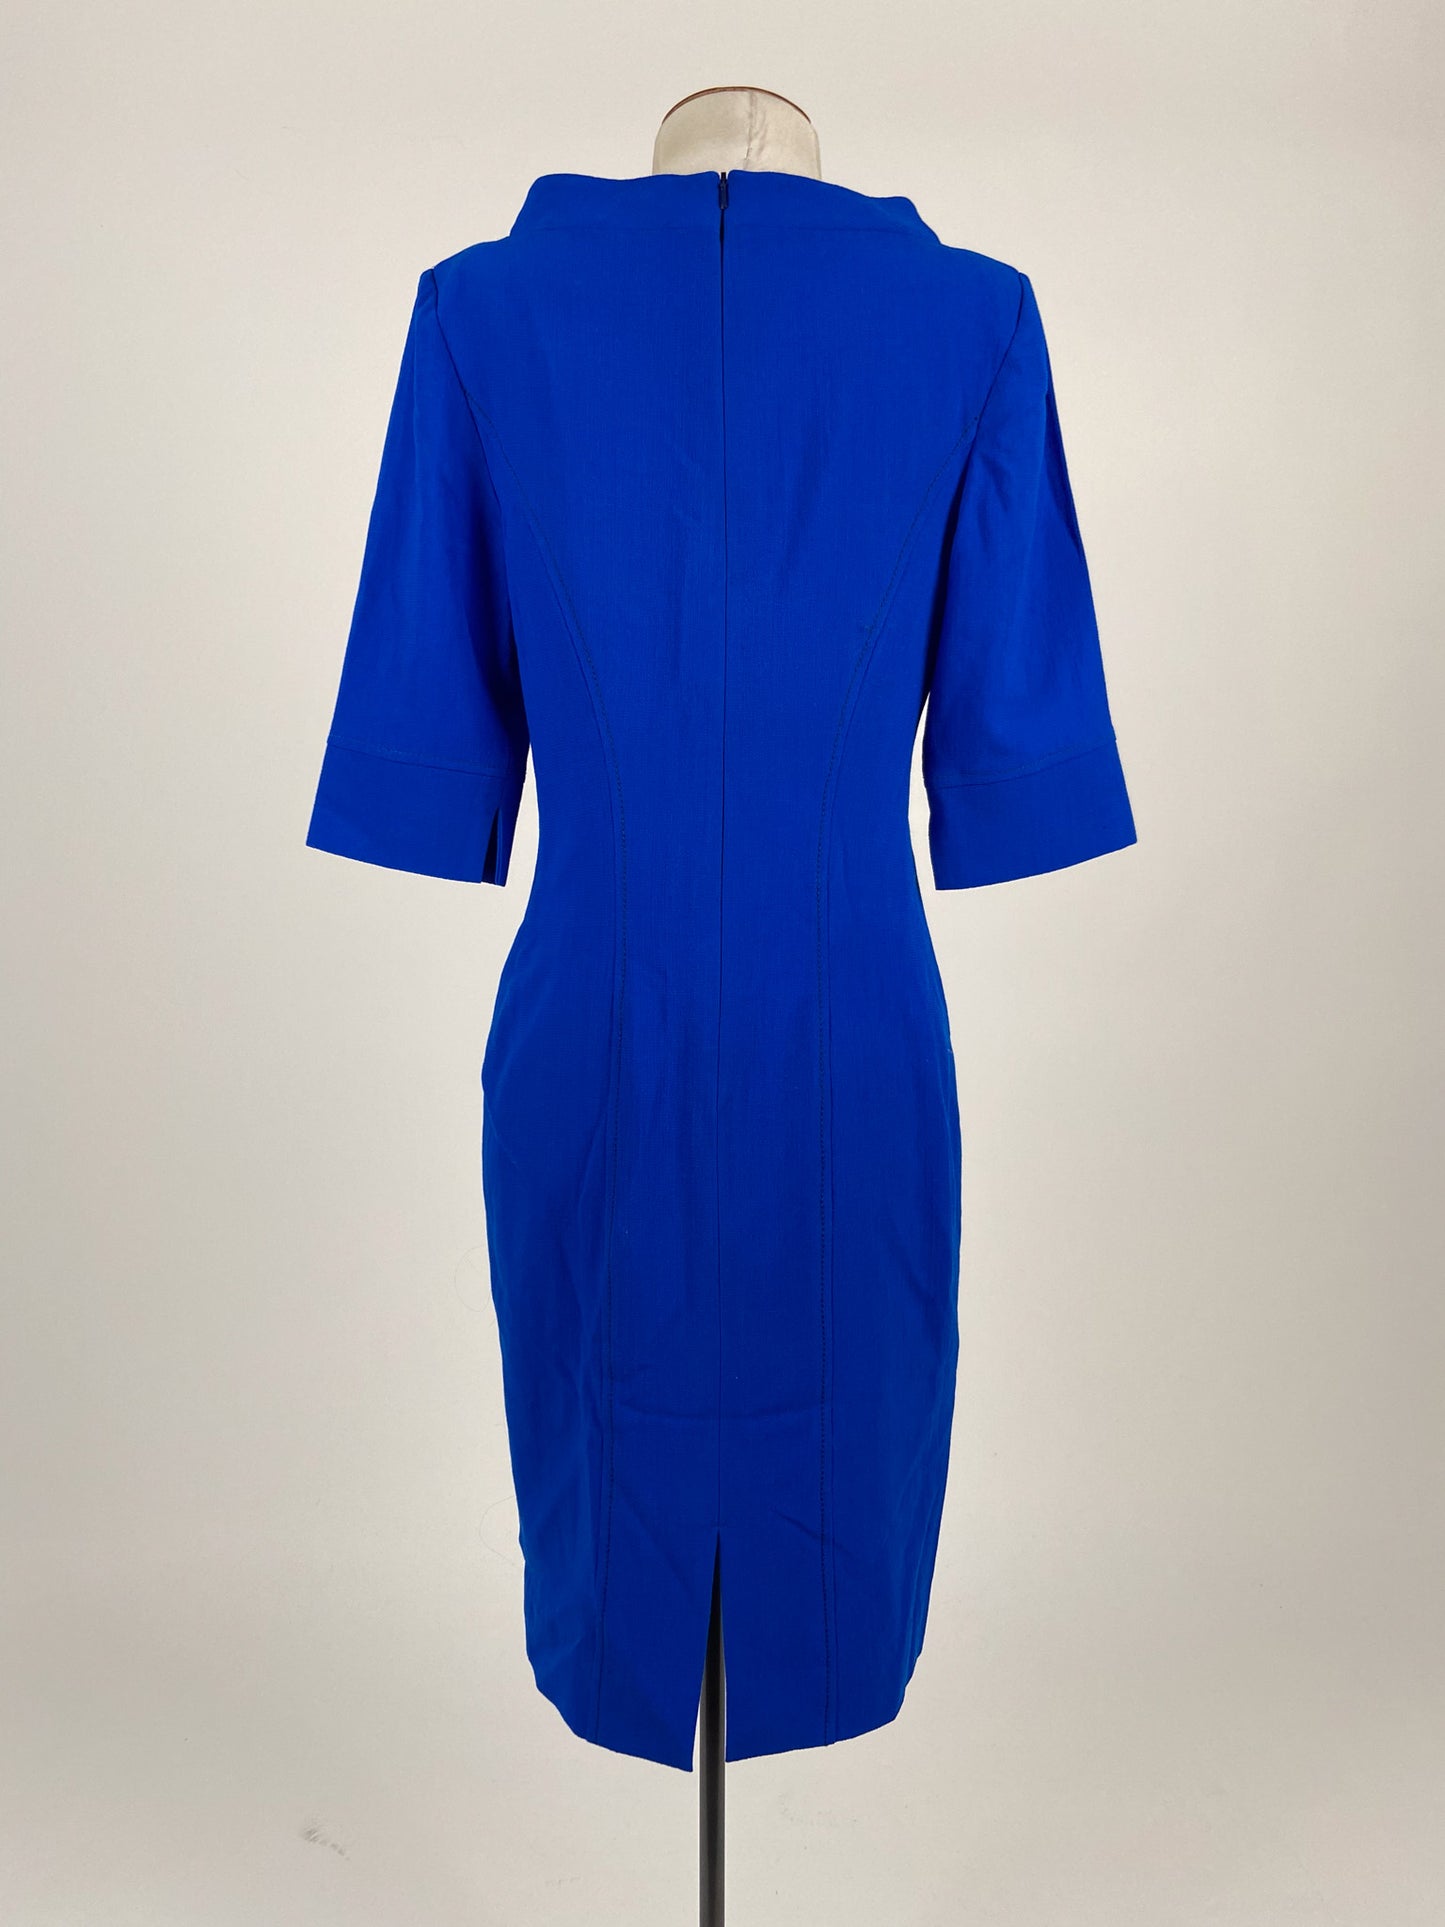 Adrienne Winkelmann | Blue Workwear Dress | Size 8